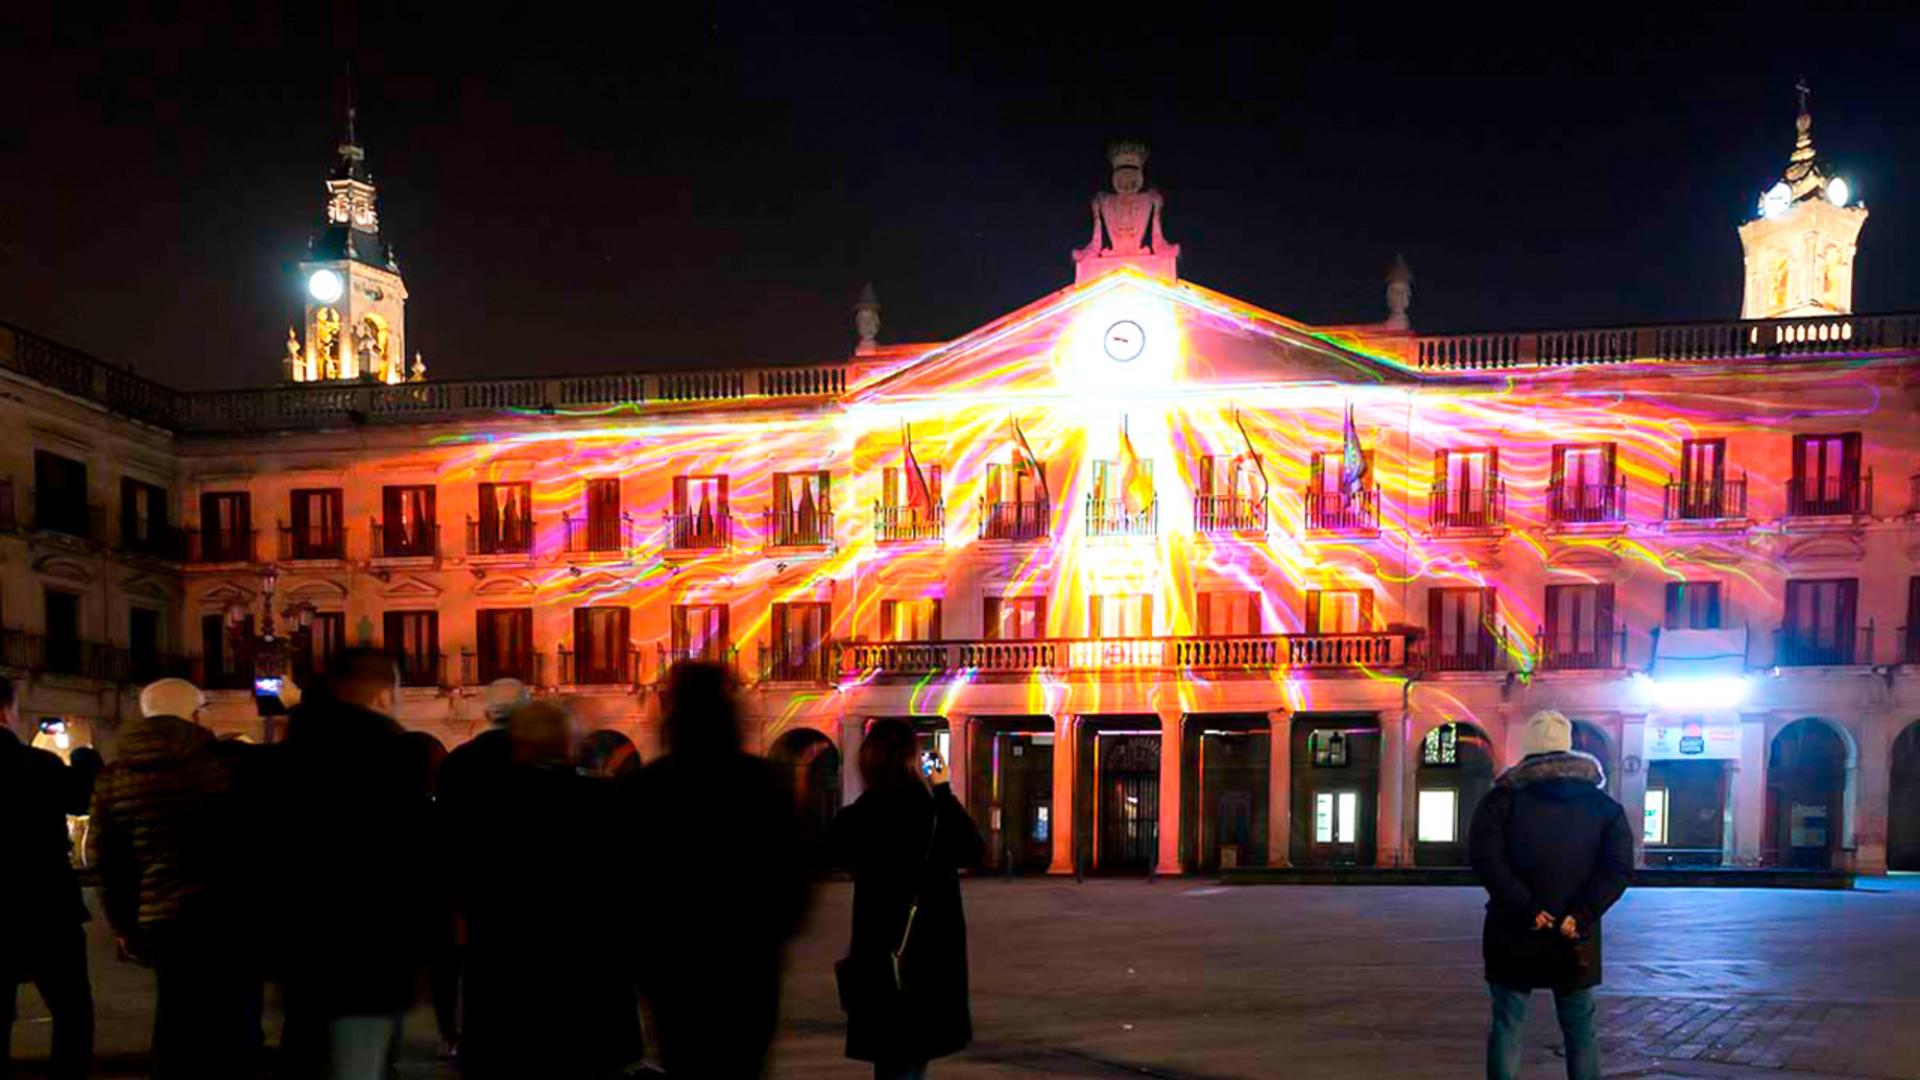 Spanish Light Festival lit up by PROLIGHTS